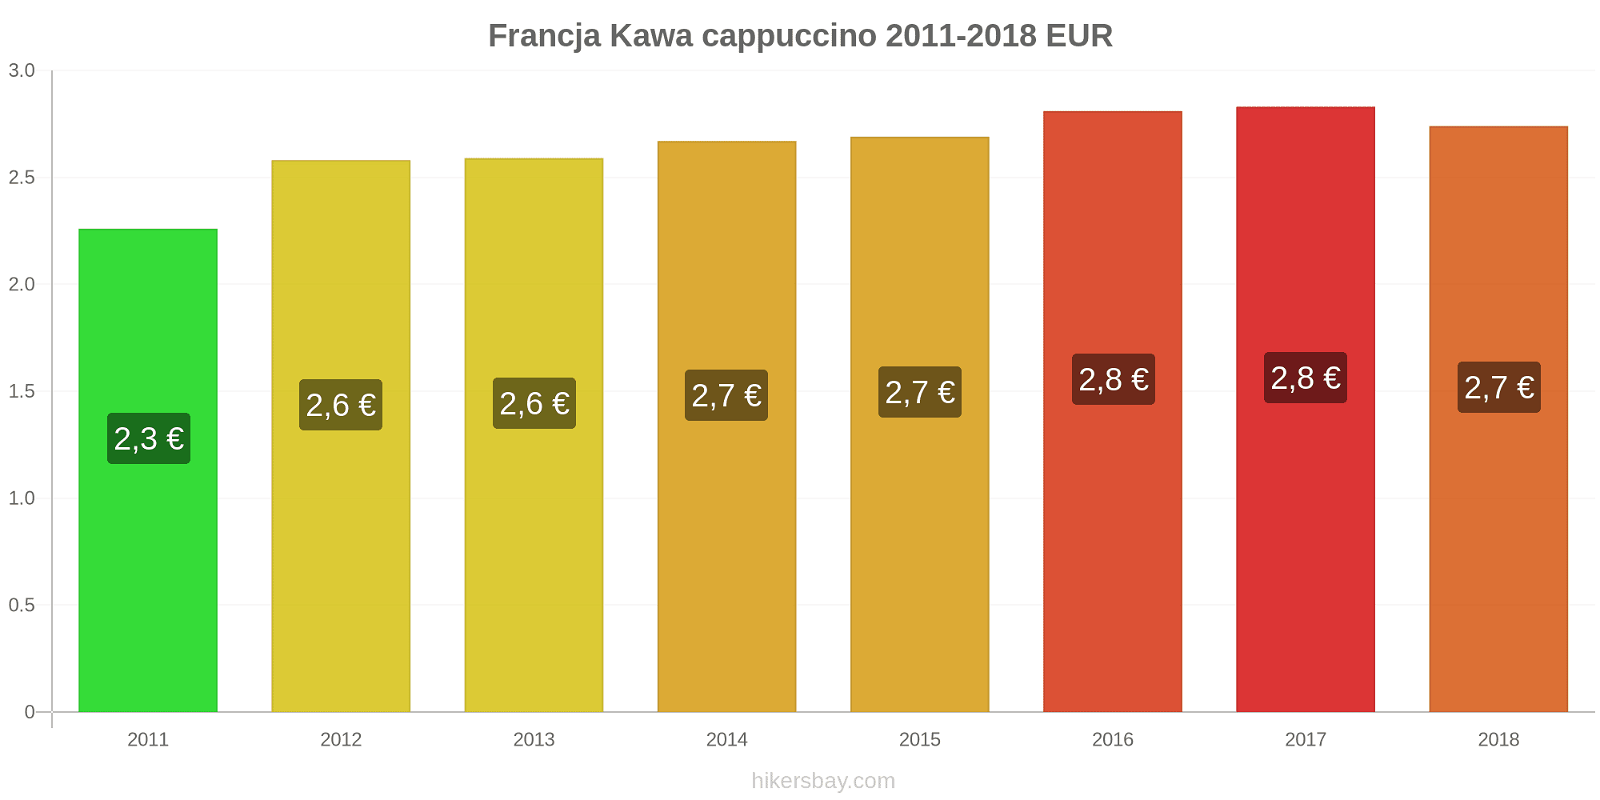 Francja zmiany cen Kawa cappuccino hikersbay.com